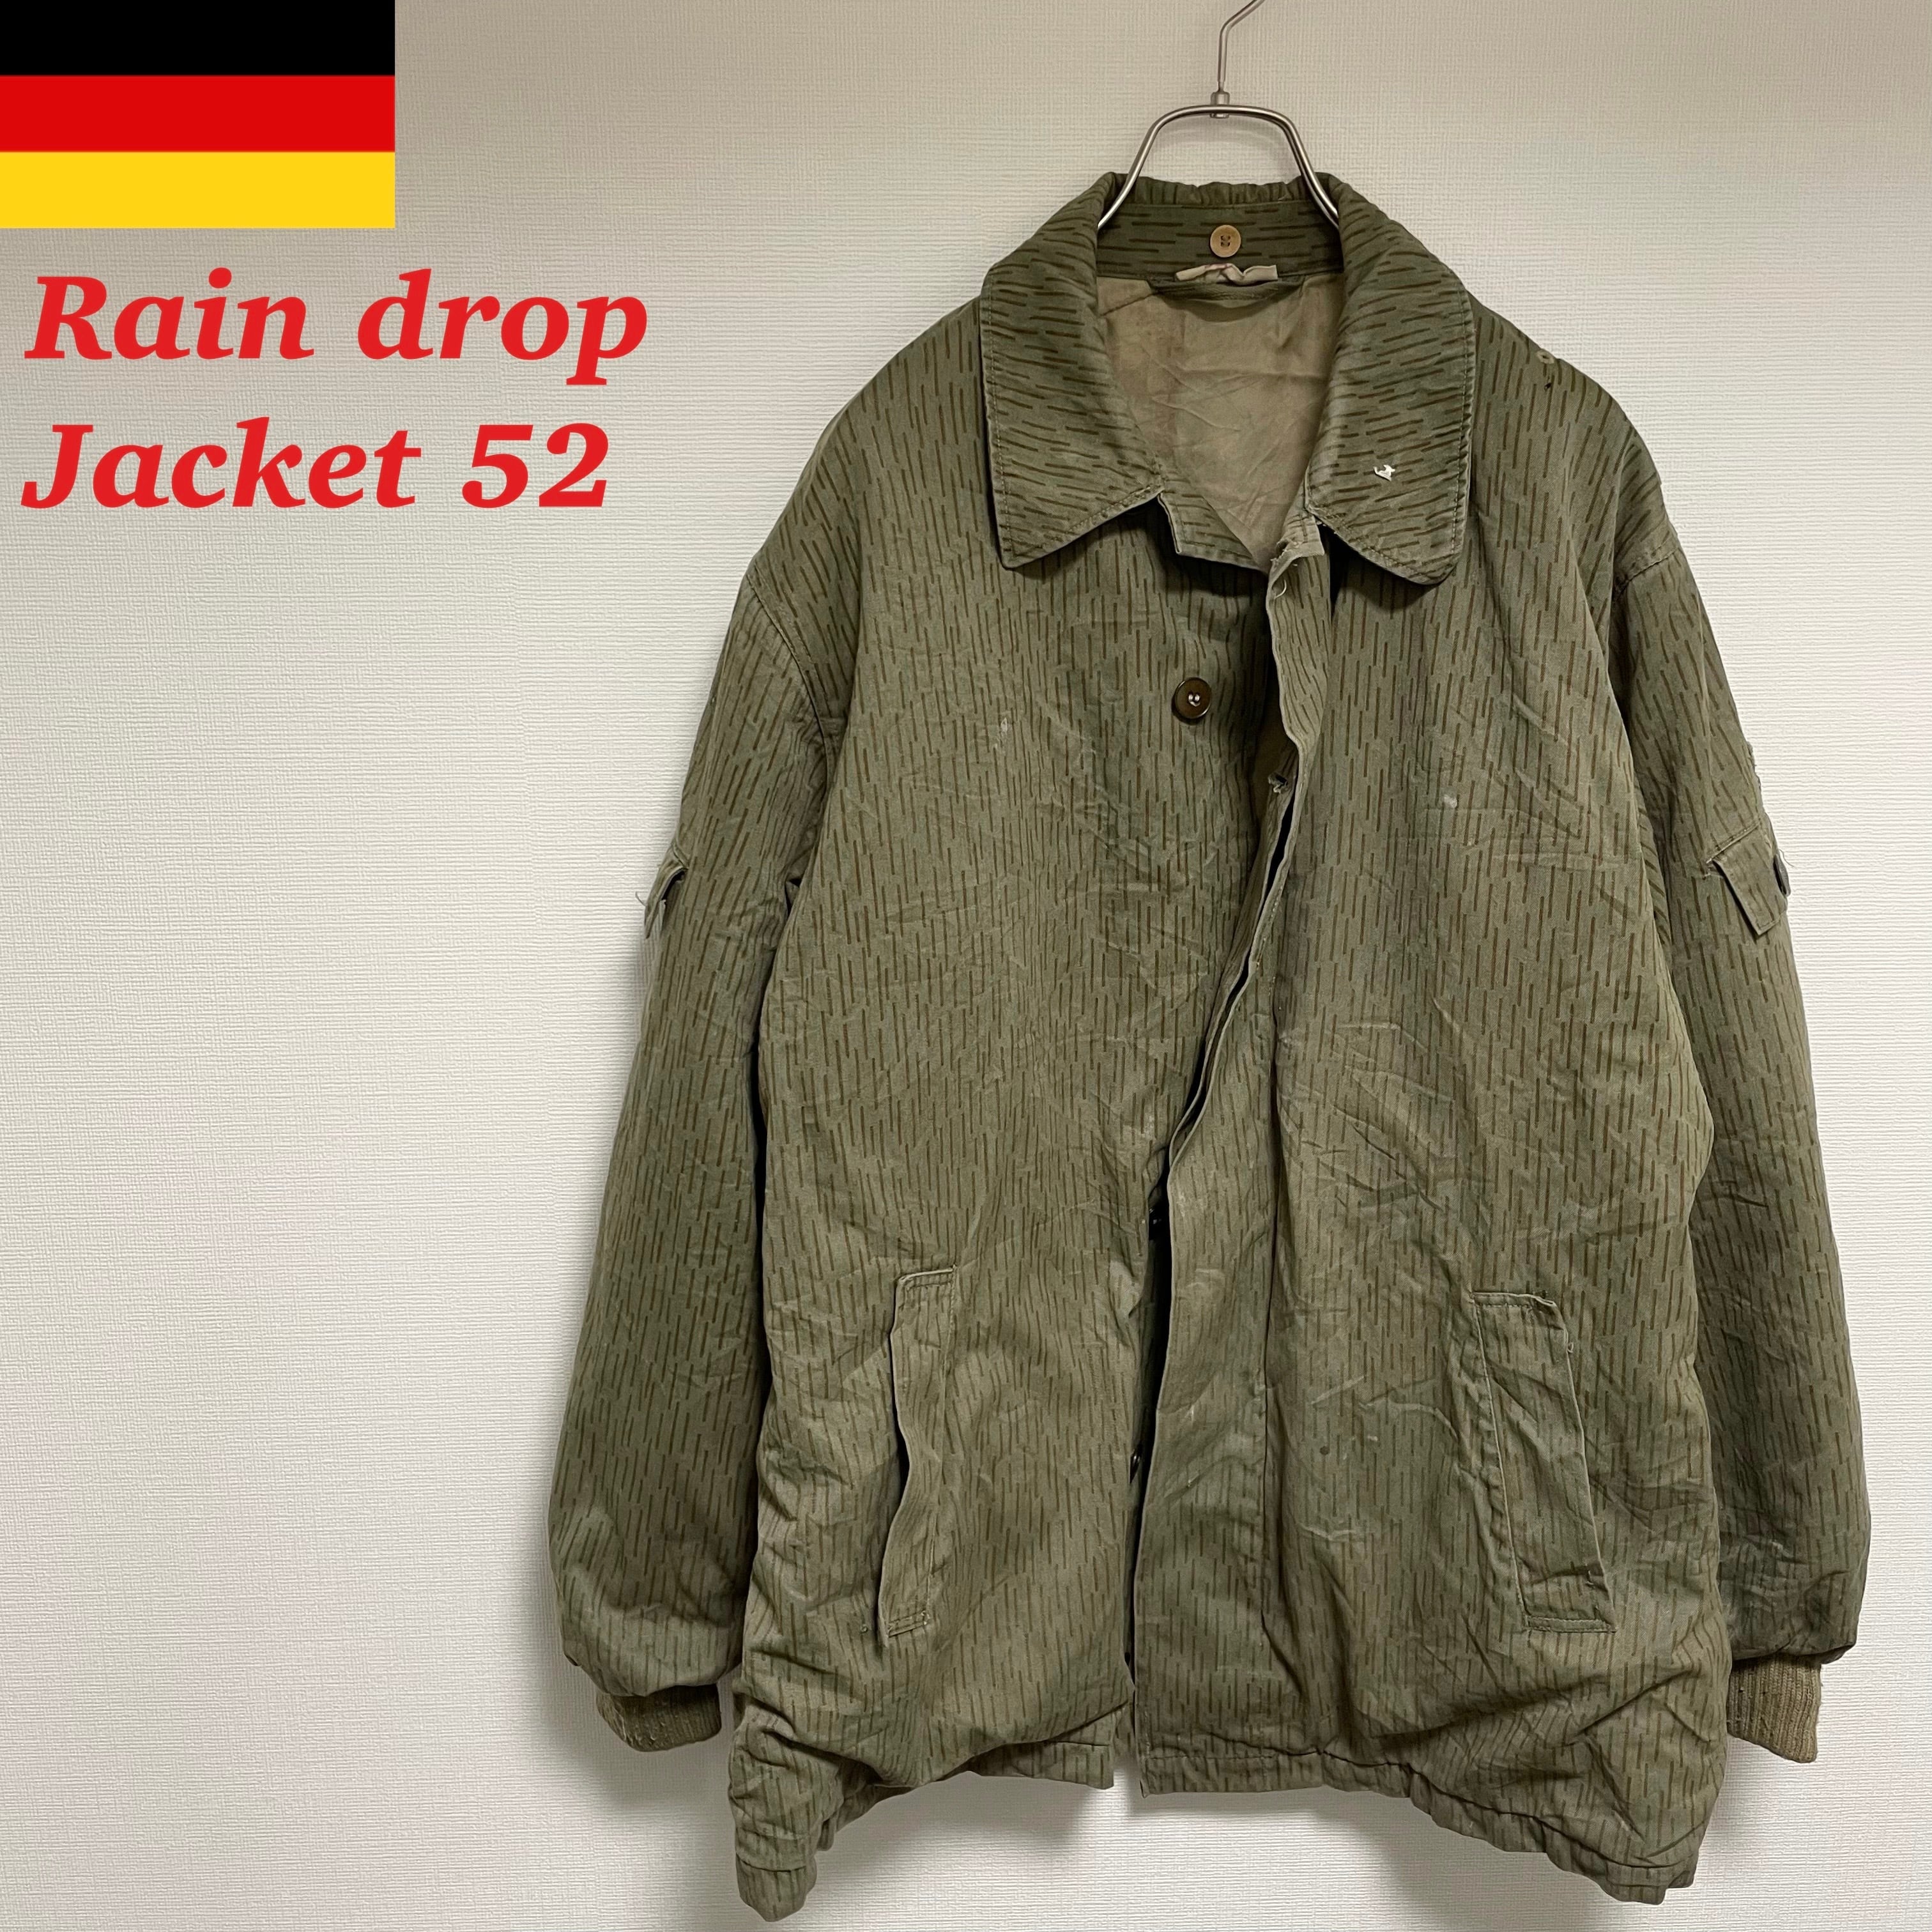 ◆実物 東ドイツ軍 ミリタリー レインドロップジャケット メンズ M